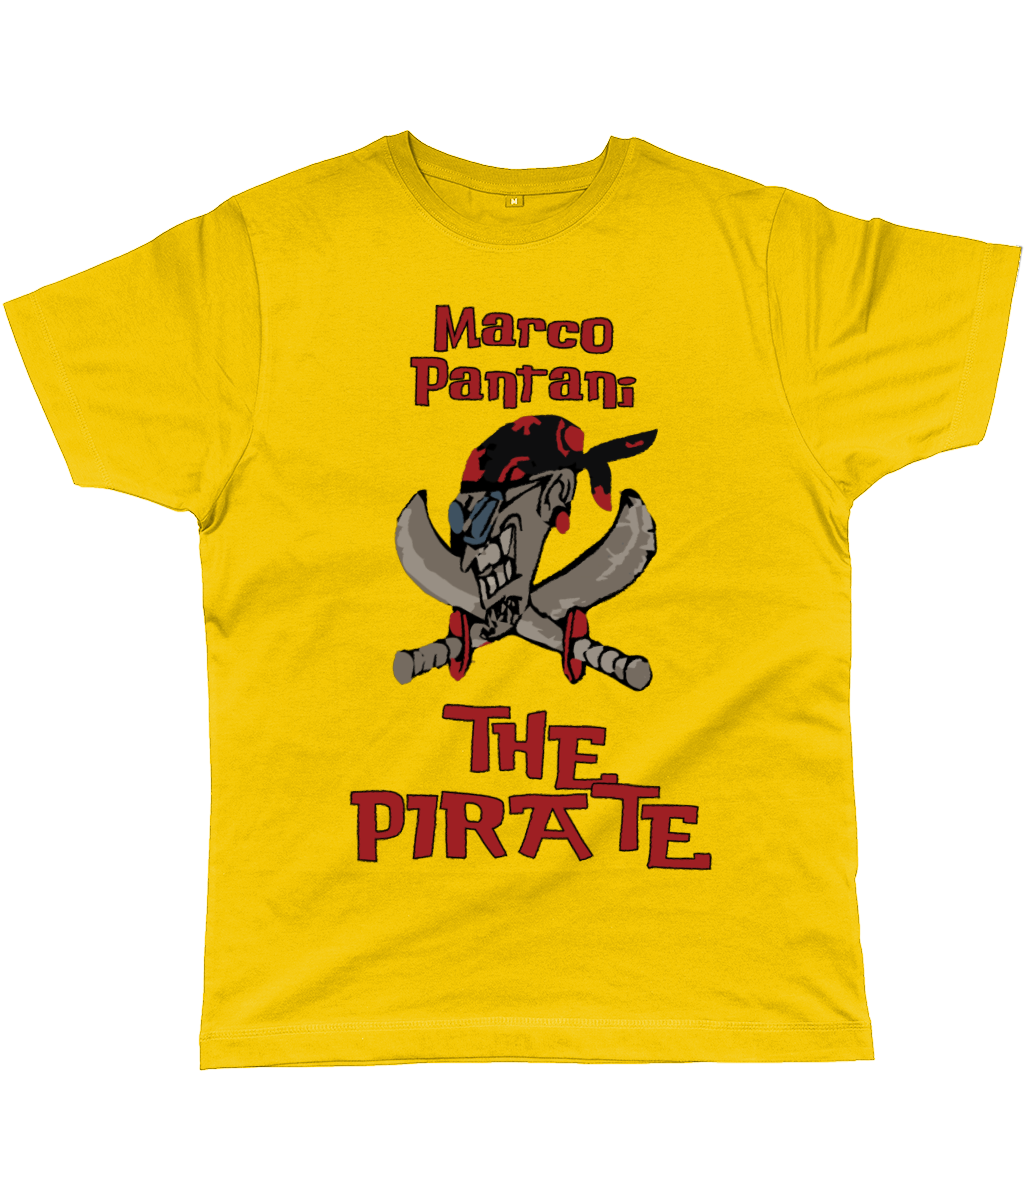 yellow pirate shirt